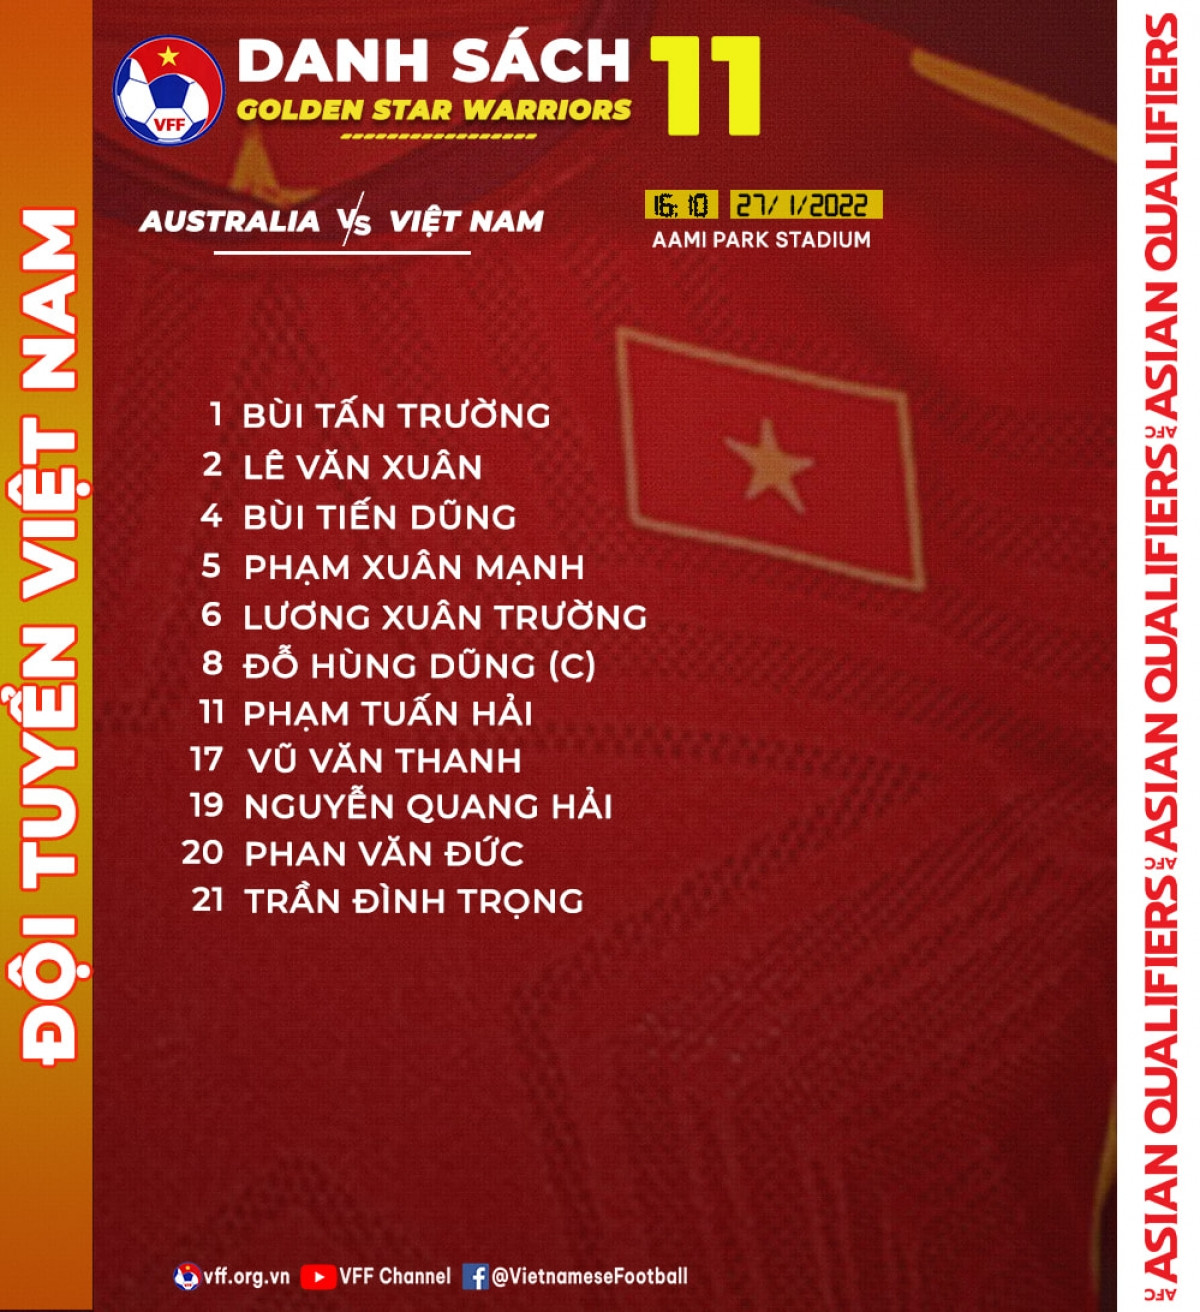 Đội hình xuất phát của ĐT Việt Nam. (Ảnh: VFF).